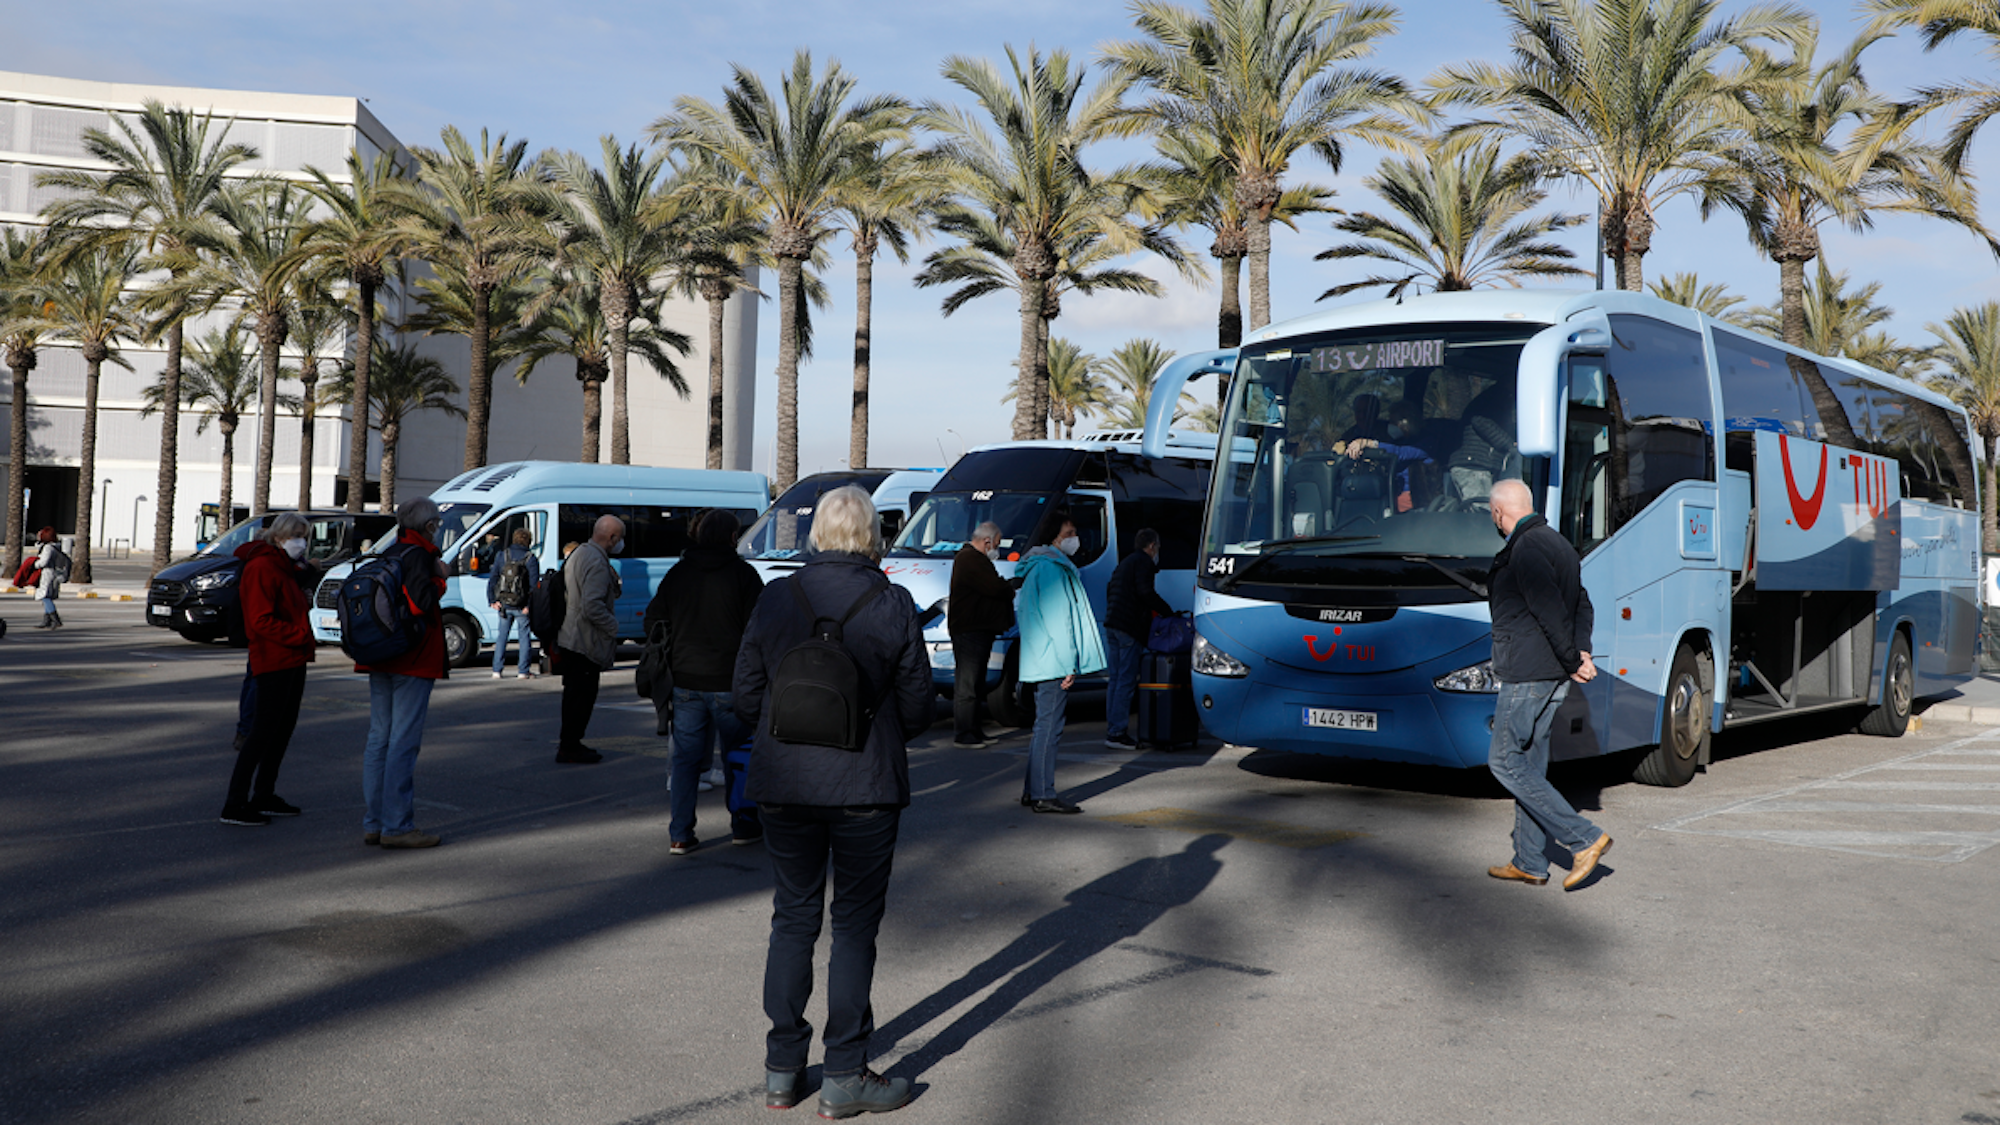 Touristinnen und Touristen, die mit TUI reisen, kommen am Flughafen von Palma de Mallorca an und gehen zu ihren Reisebussen für die Weiterfahrt.